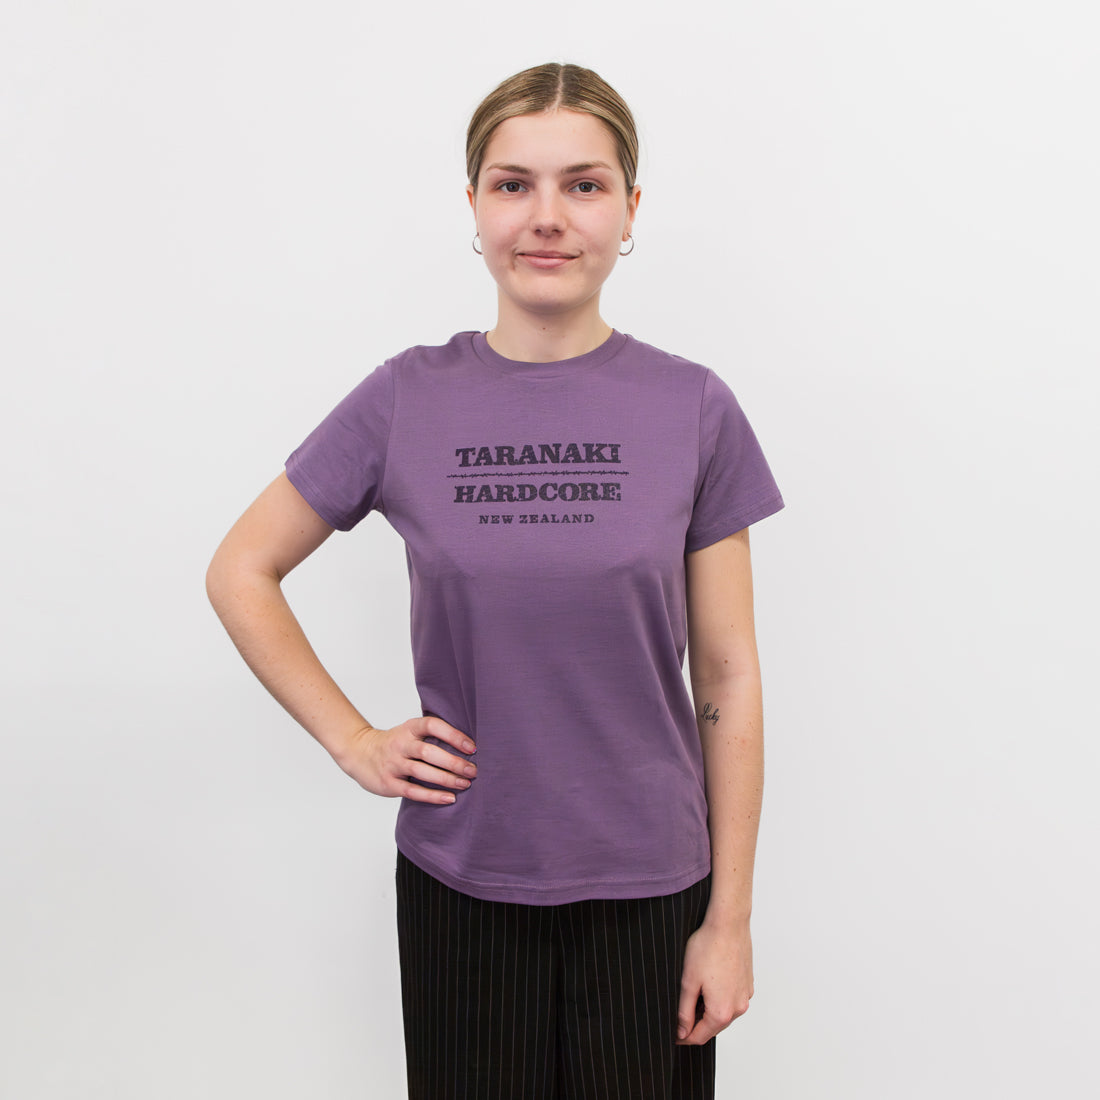 Womens Rustic Mountain T-Shirt